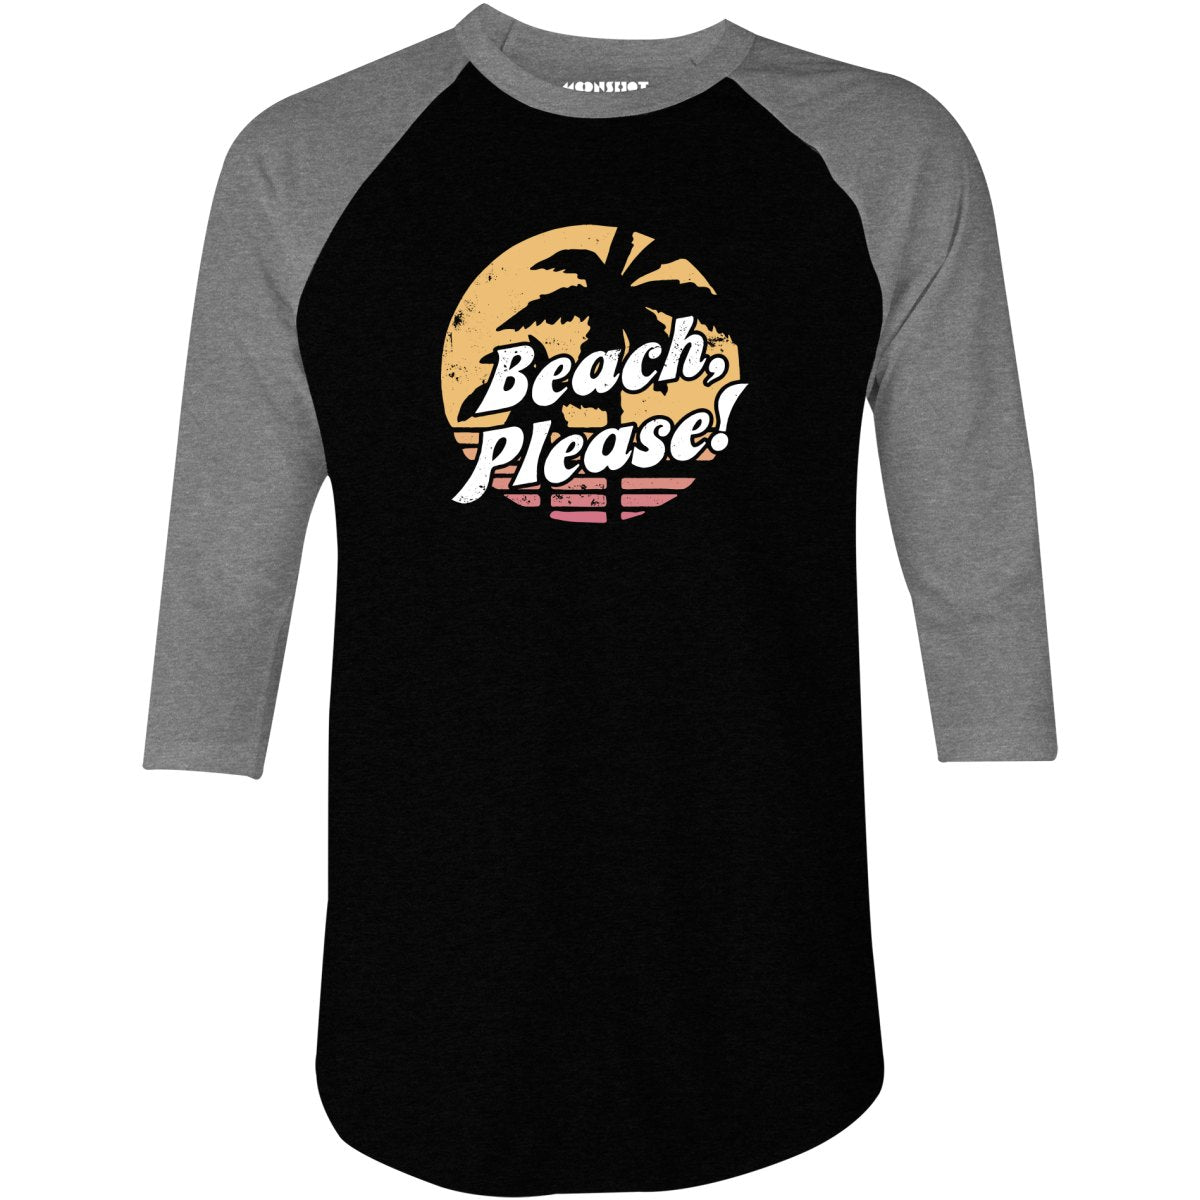 Beach, Please! - 3/4 Sleeve Raglan T-Shirt